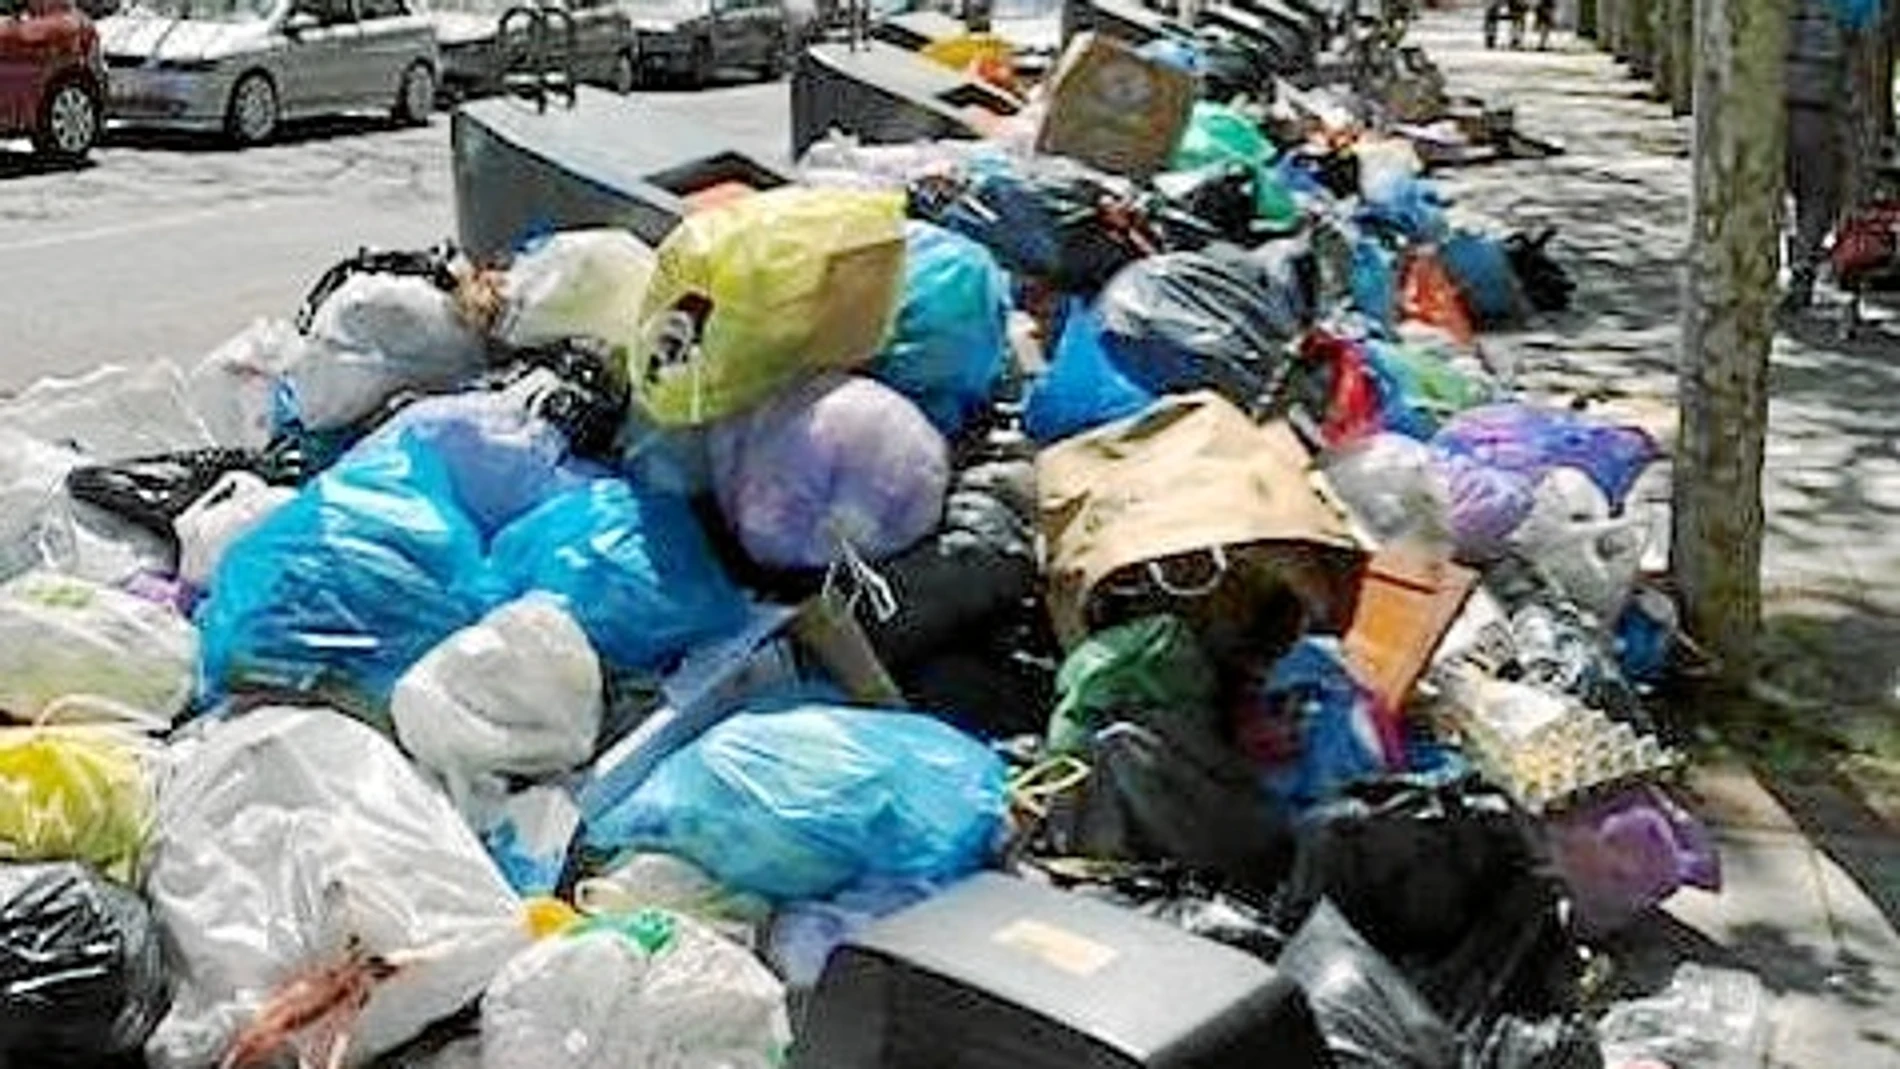 Aspecto que presentan los contenedores de basura de Alcorcón